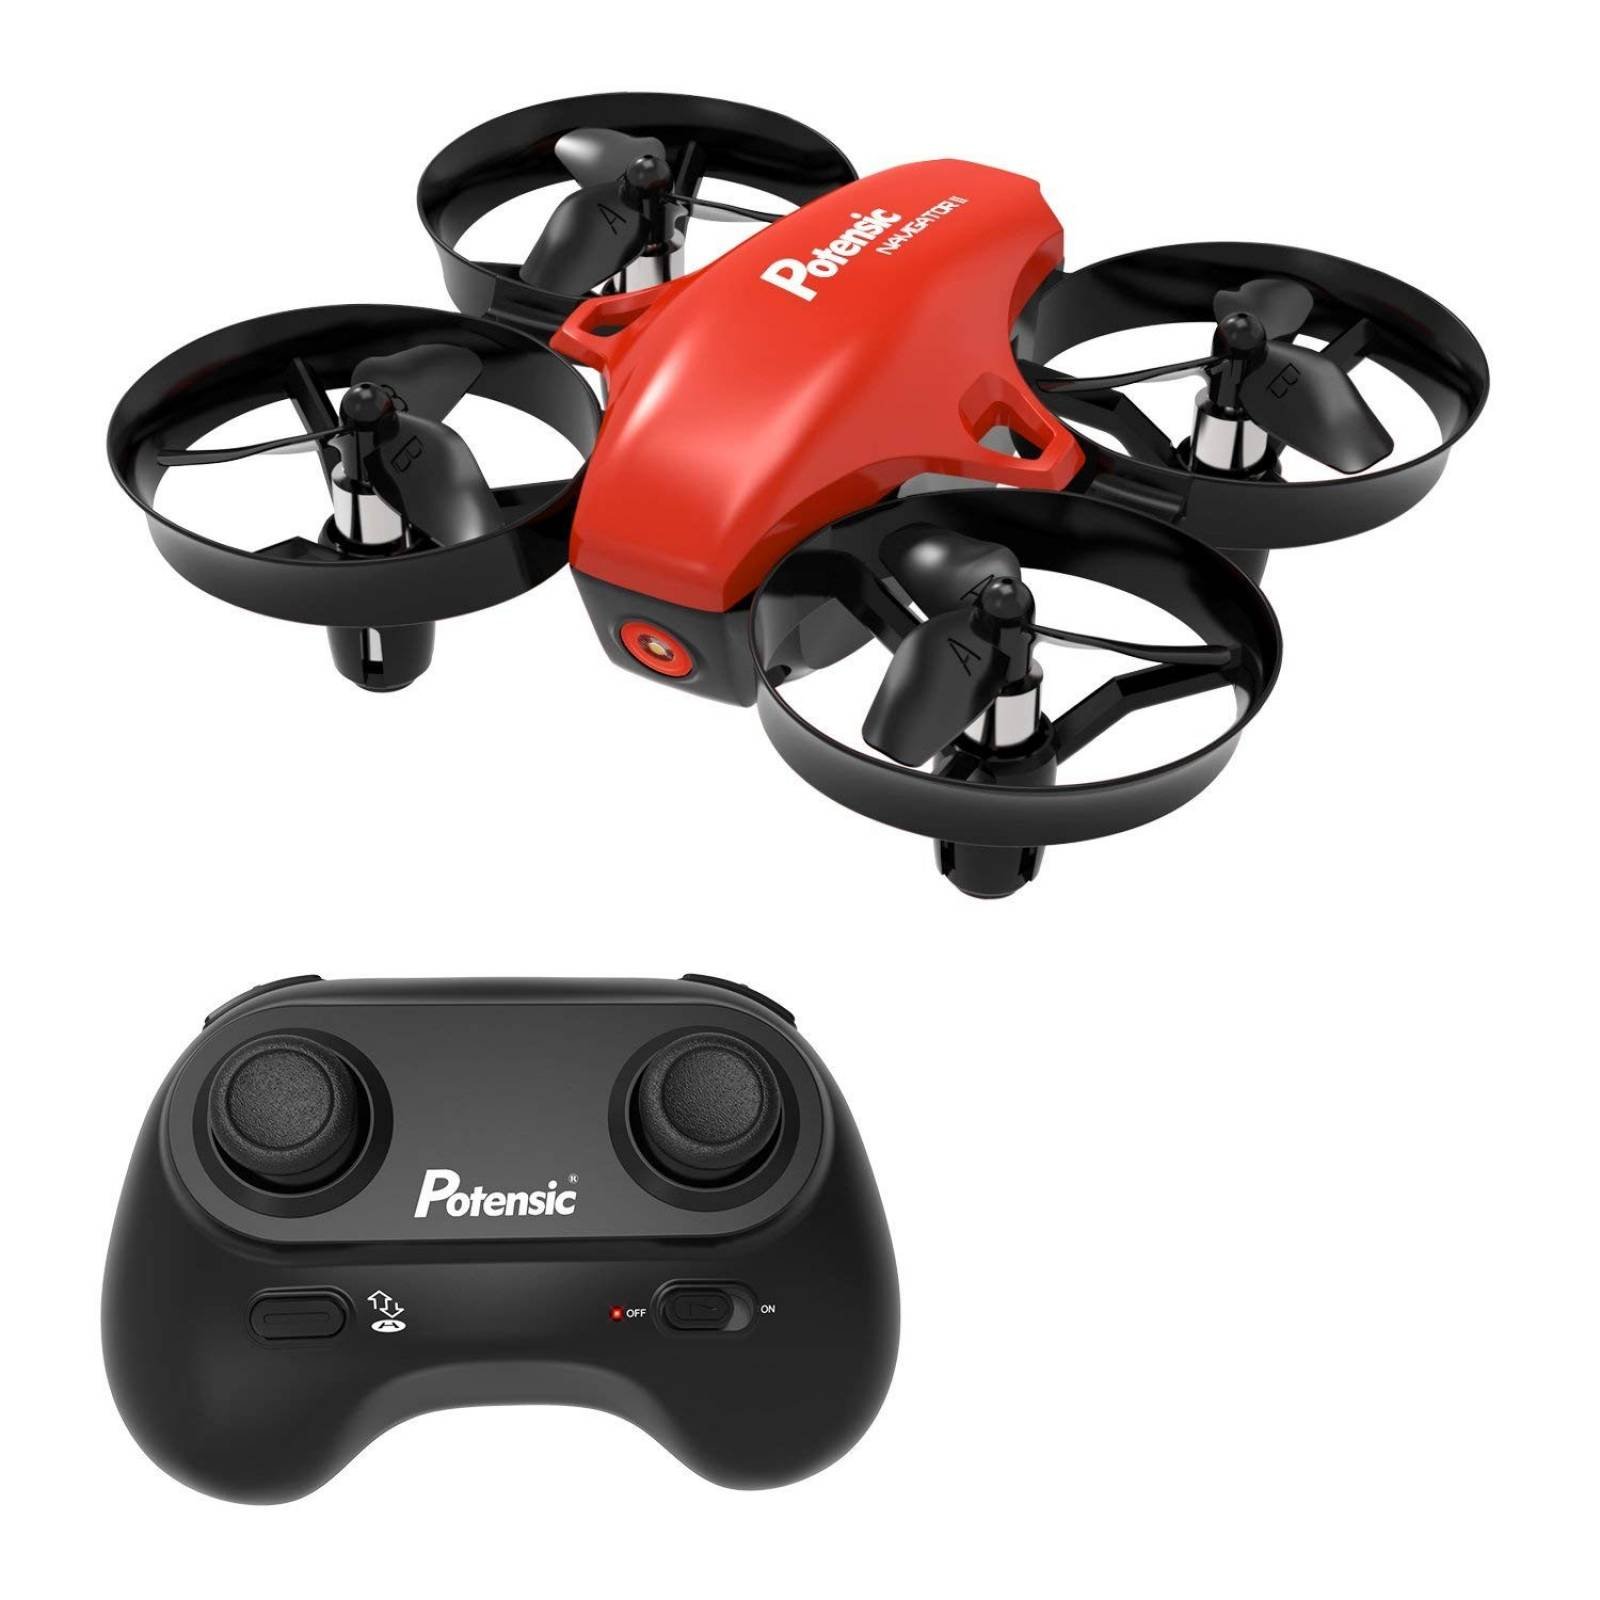 Drone cuadricóptero Potensic A20 2.4Ghz control remoto -Rojo